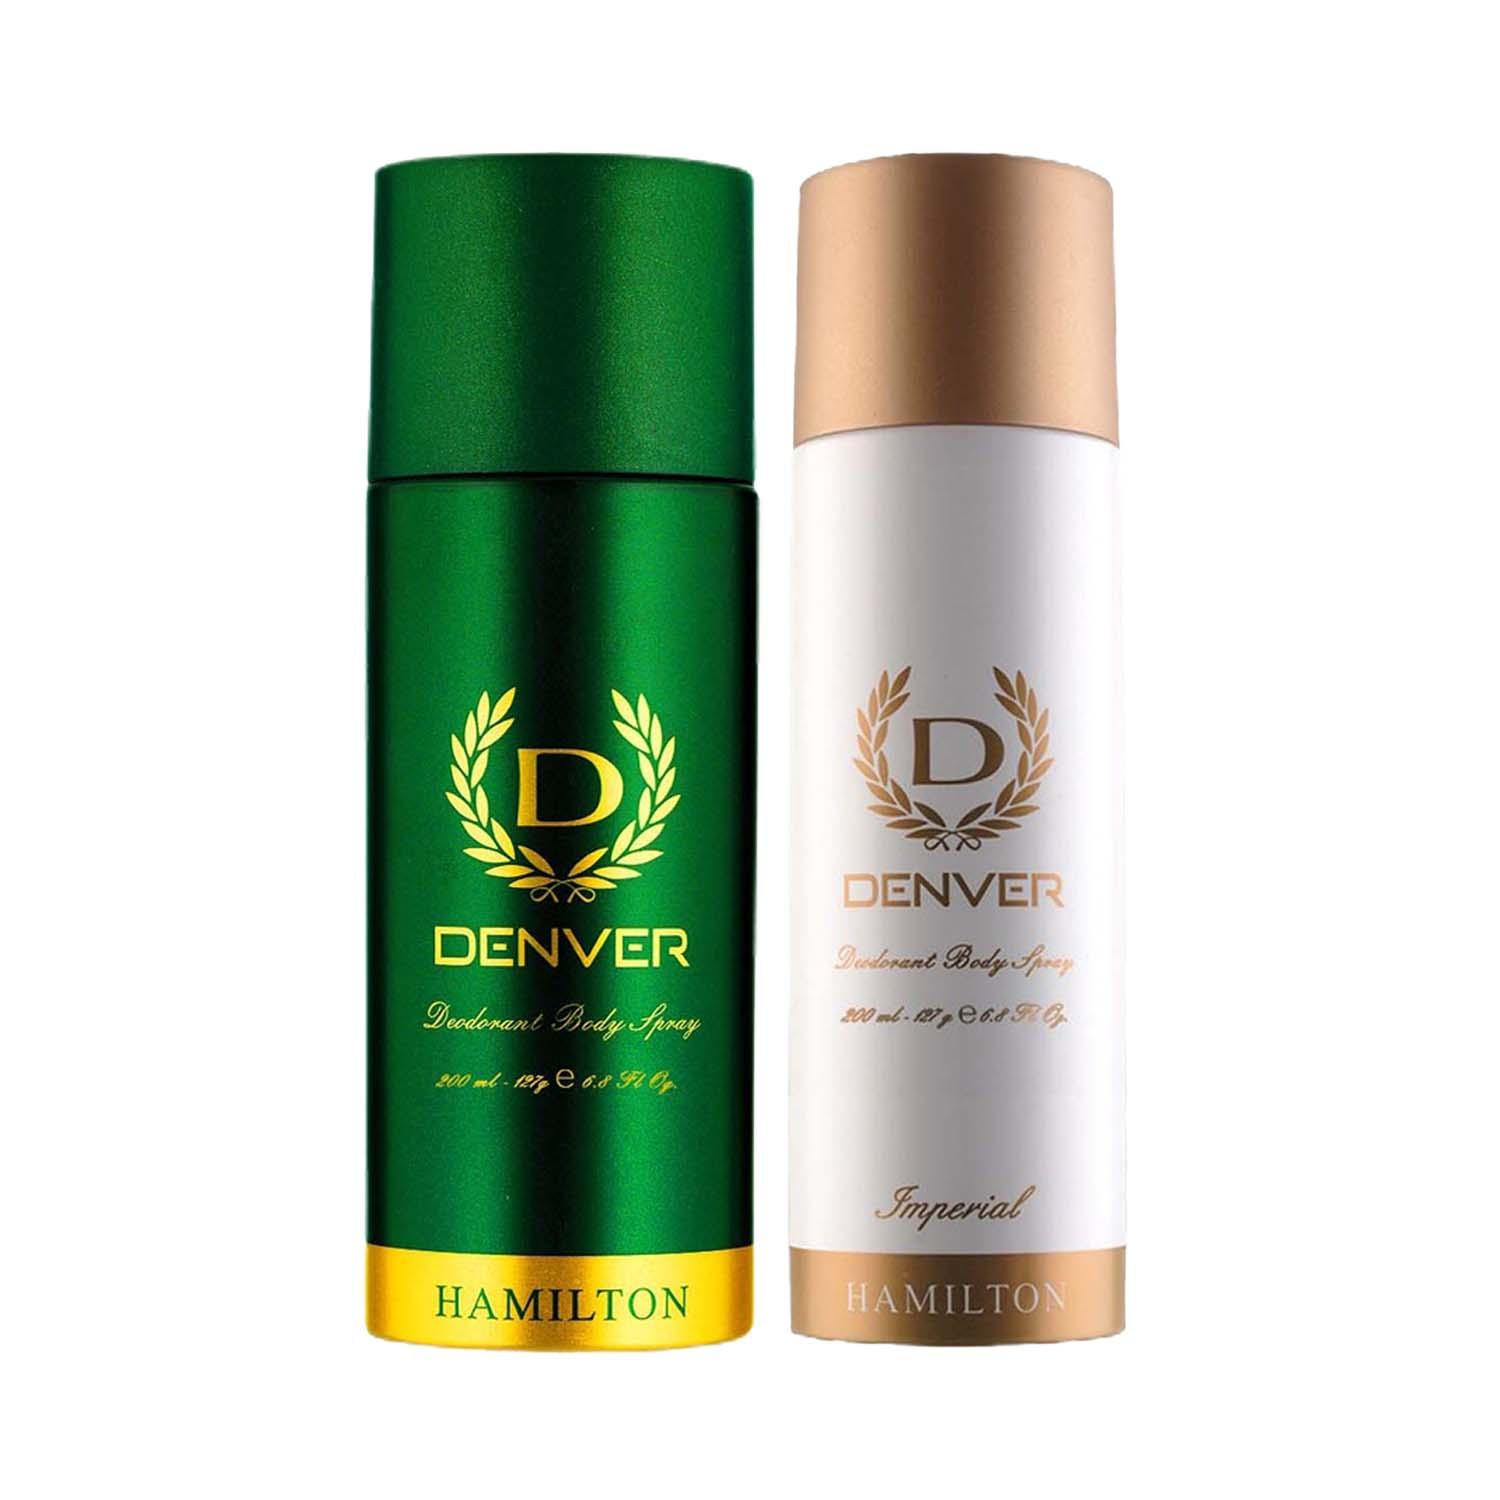 Denver | Denver Imperial & Hamilton Deodorant Body Spray for Men (Pack of 2) Combo